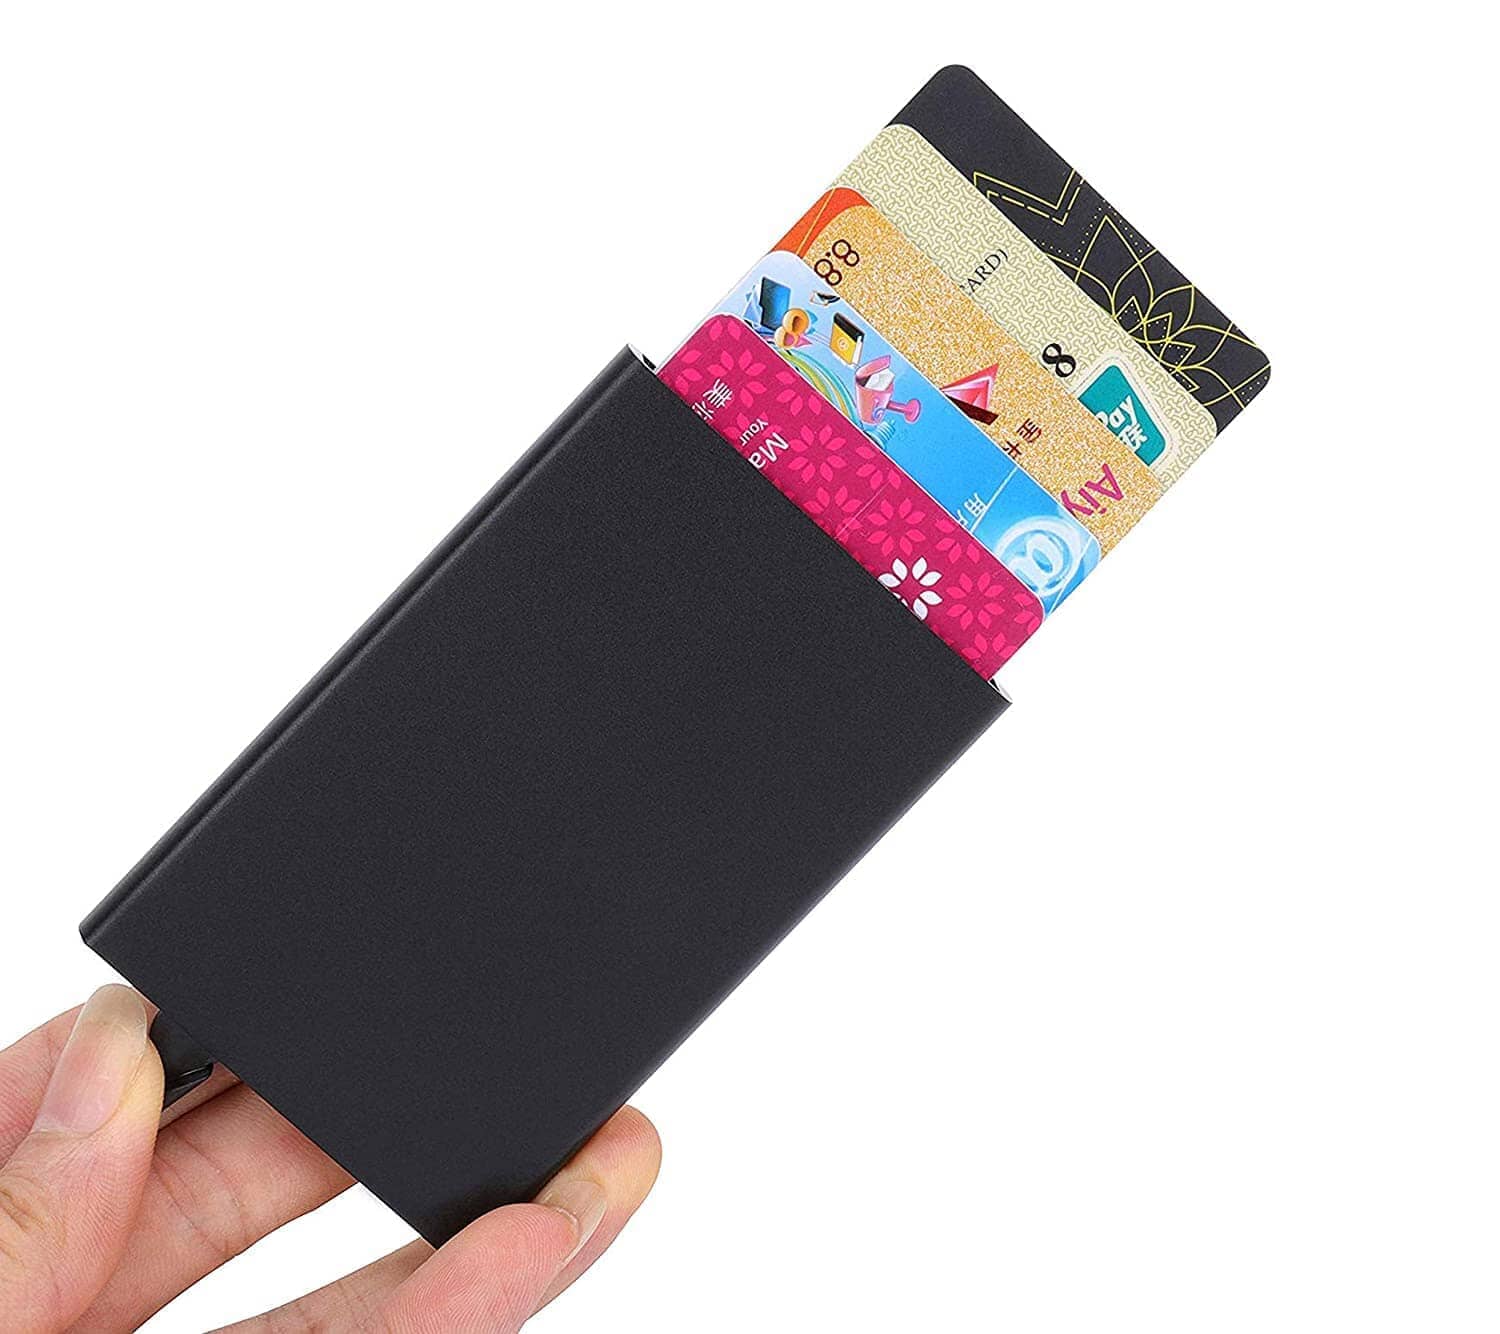 Smart Card Wallet - RFID Blocking Anti-Theft ( Buy 1 Get 1 Free )